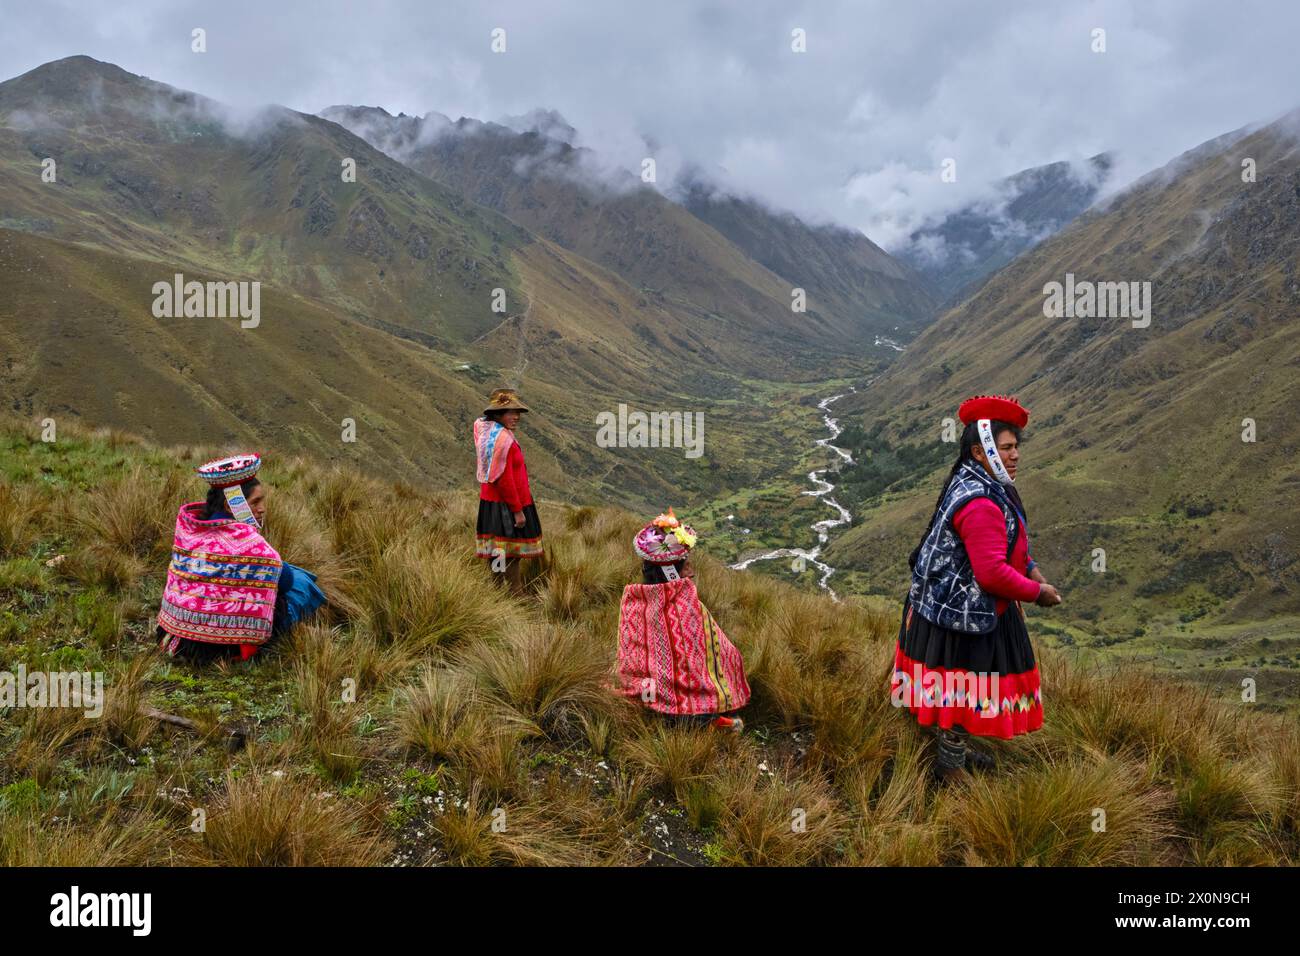 Pérou, province de Cuzco, la Vallée sacrée des Incas, communautés des Andes, groupe de peuples quechua locaux dans la vallée de Vilcanota Banque D'Images